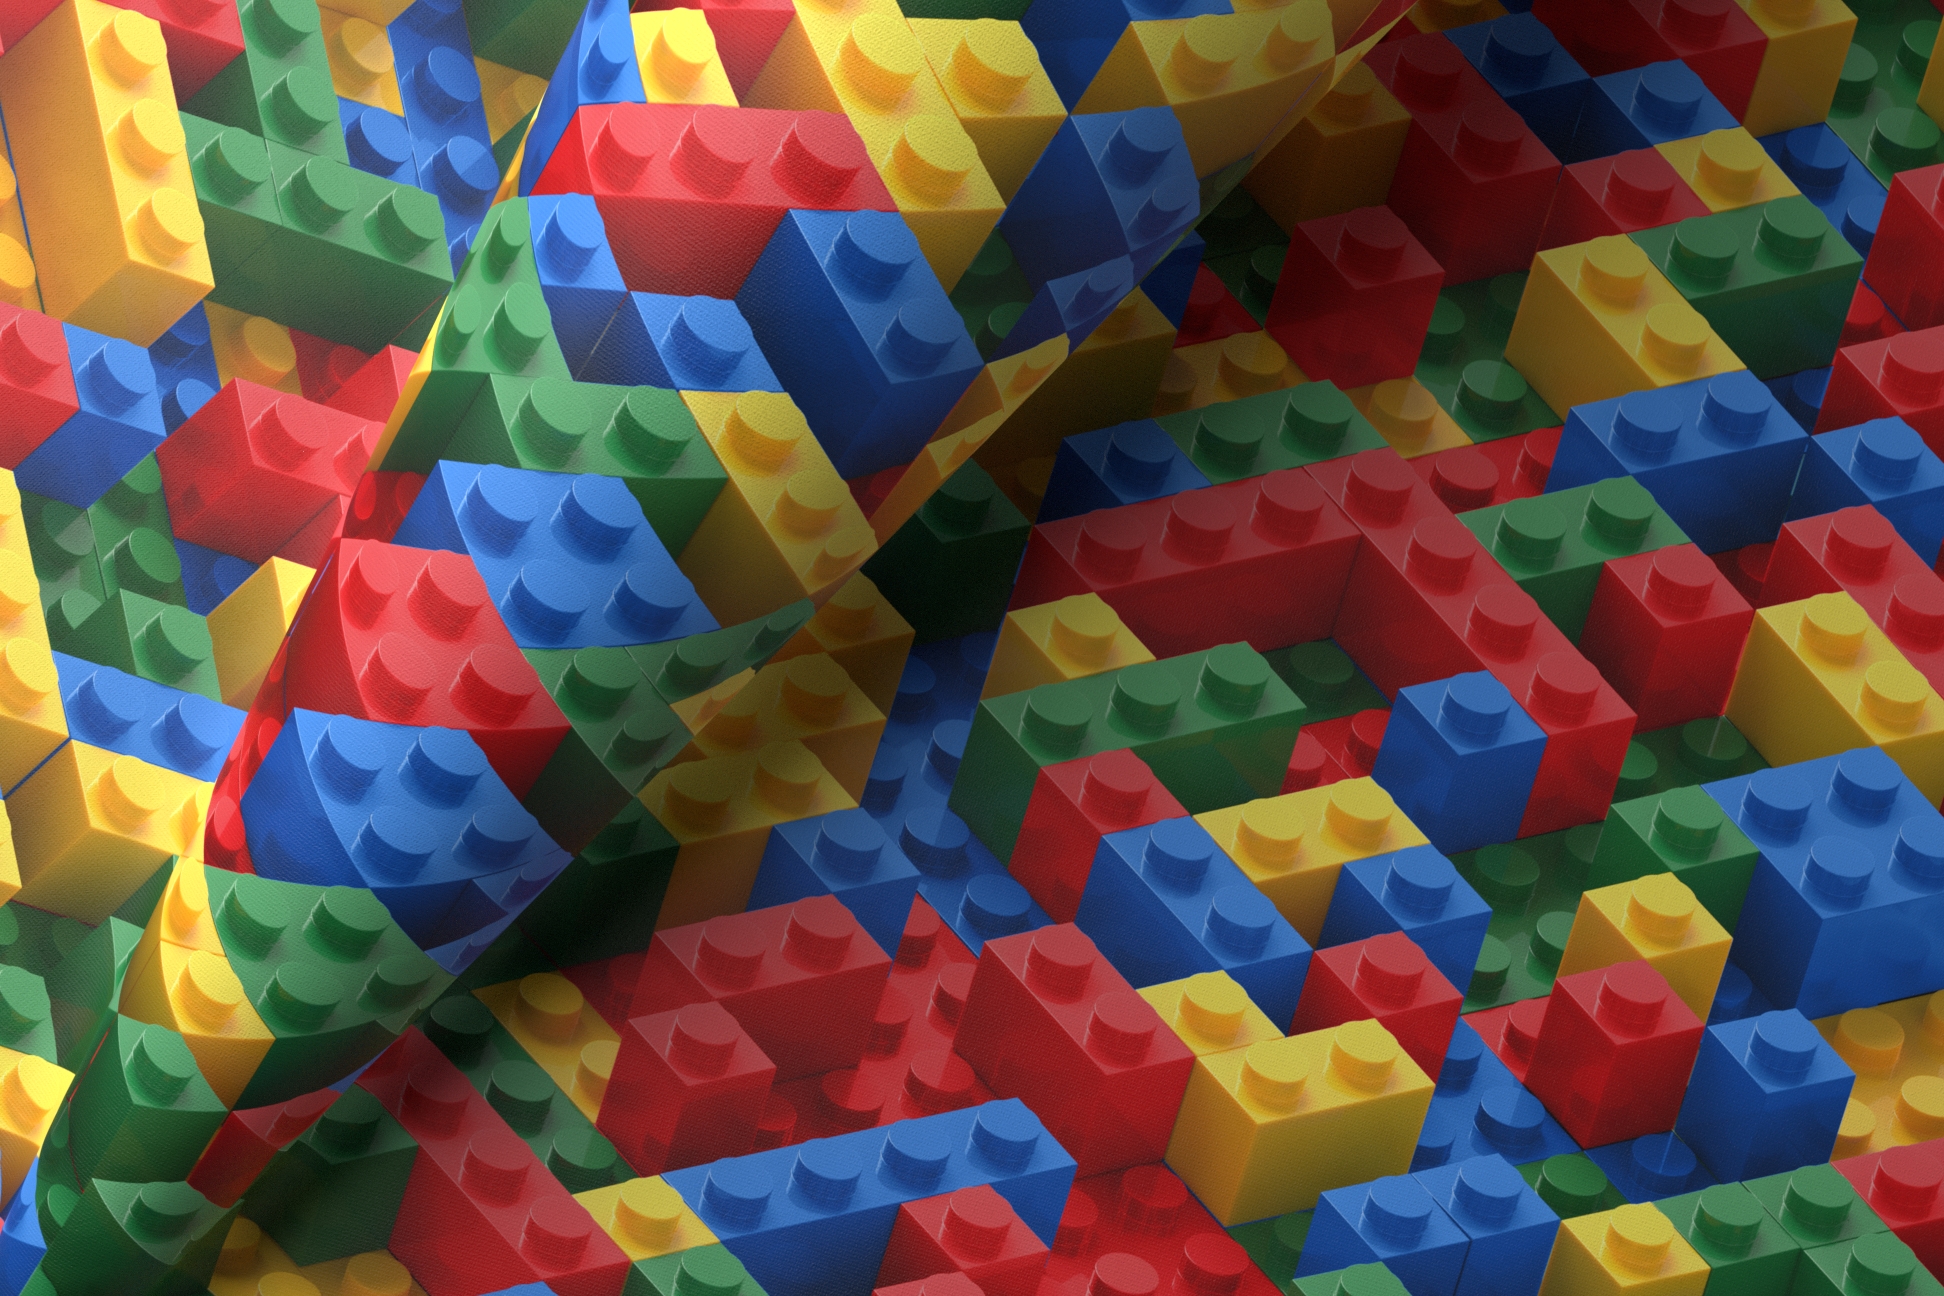 Legogo